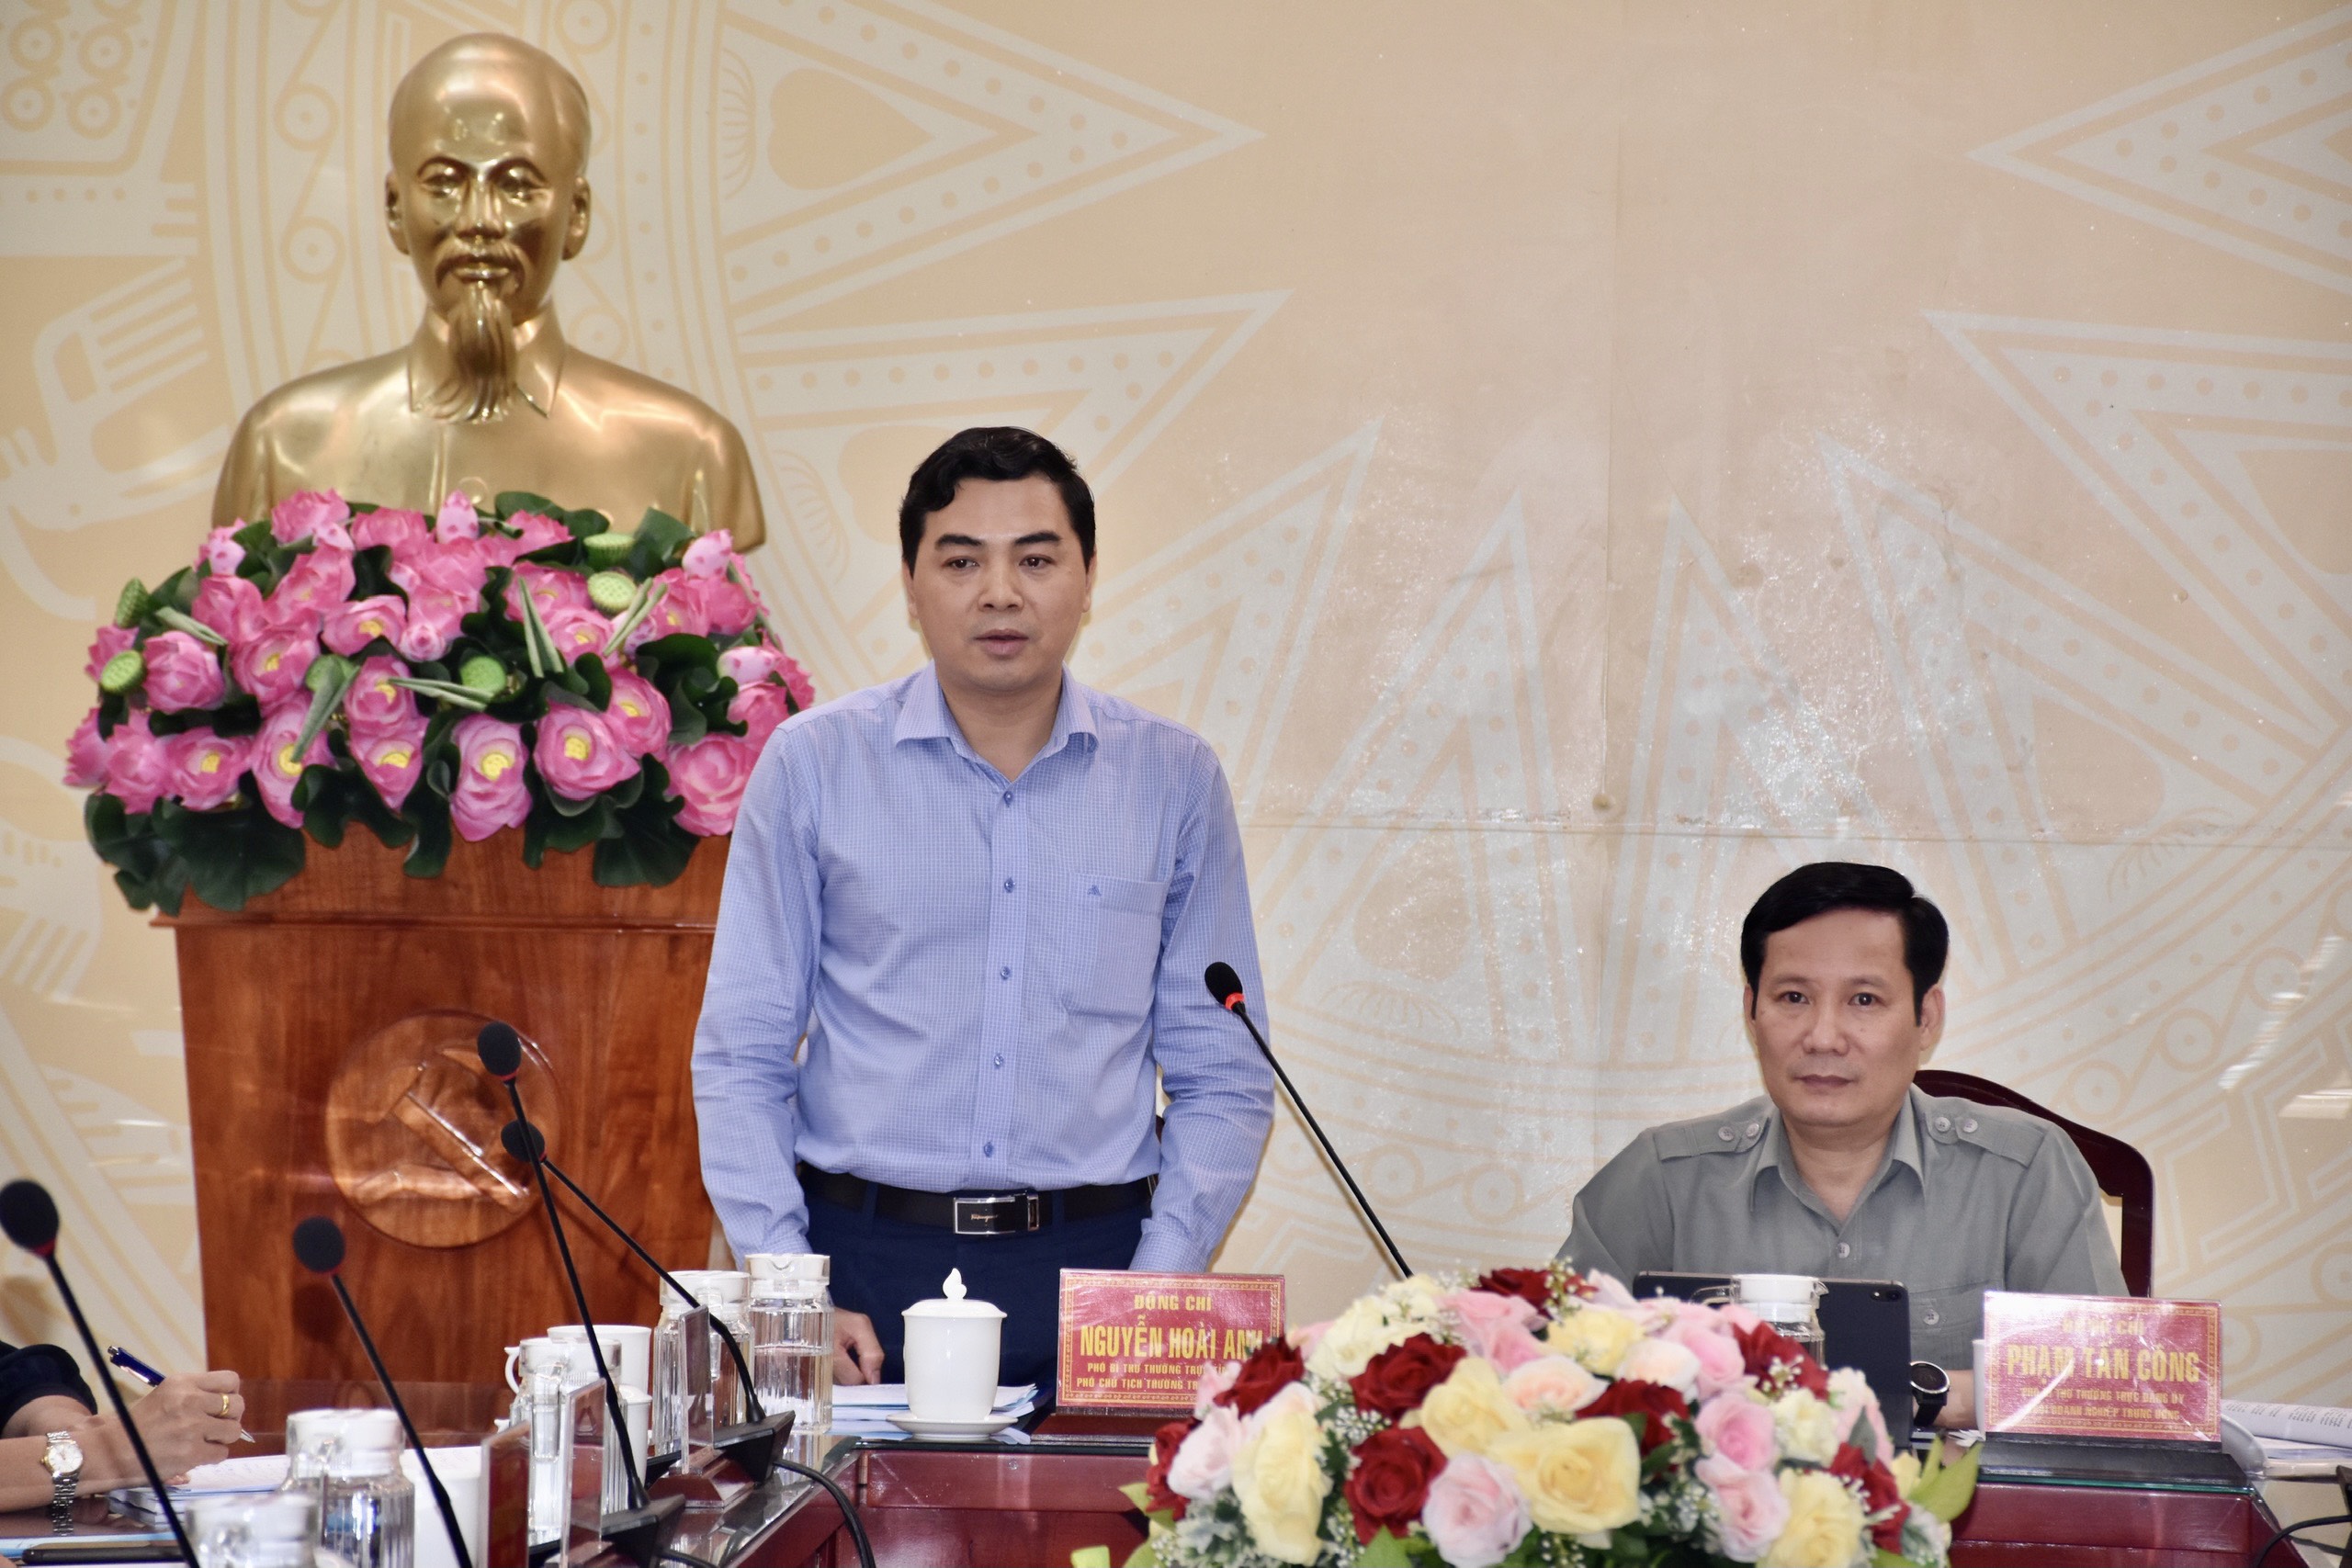 Đồng chí Nguyễn Hoài Anh - Phó Bí thư Thường trực Tỉnh ủy Bình Thuận báo cáo với Đoàn công tác về kết quả thực hiện Cuộc vận động tại địa phương.